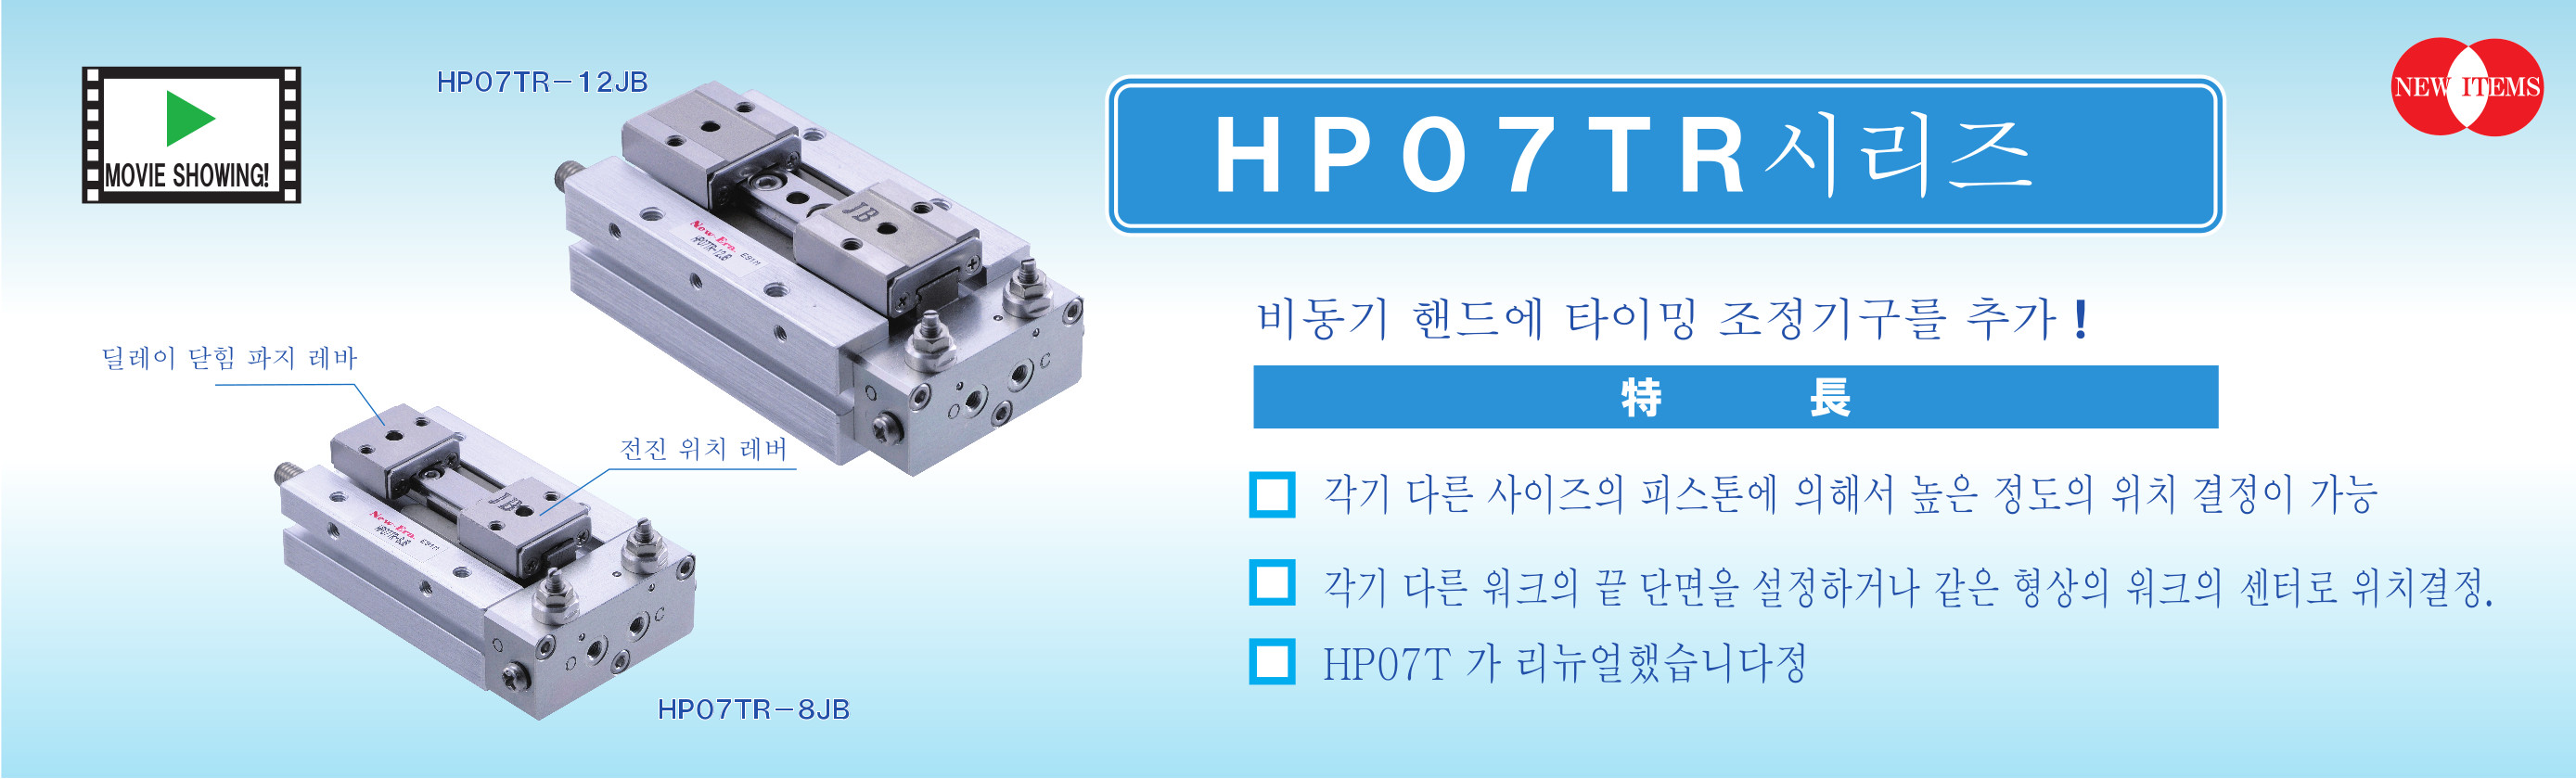 HP07TR 시리즈 에어 핸드